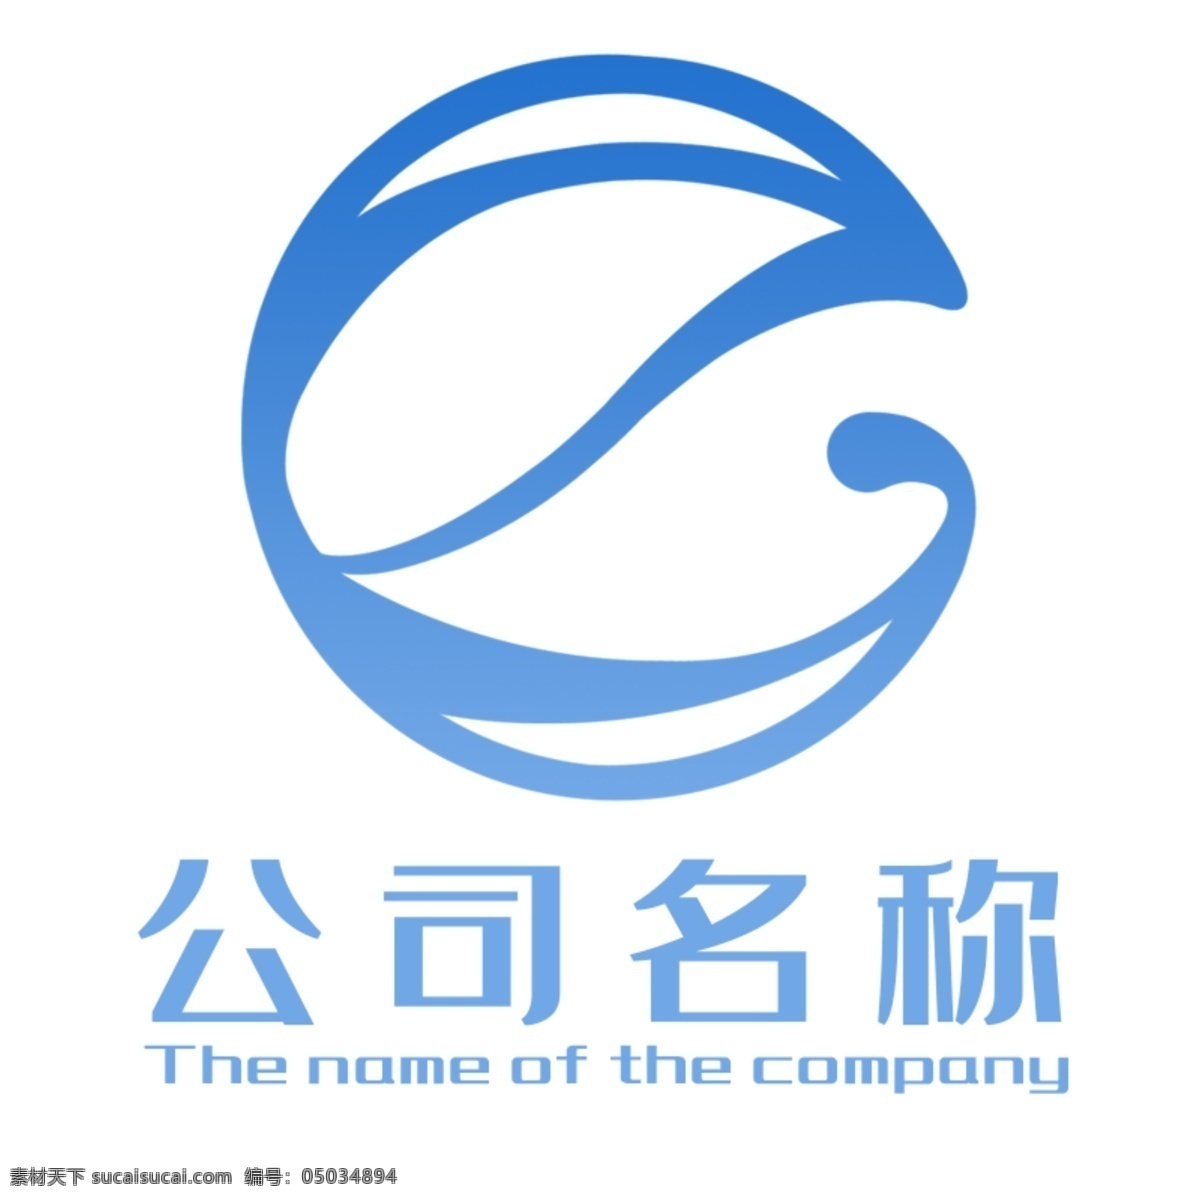 蓝色 创意 帆船 zg 公司 logo 简约 水 纹 大气logo 简约logo 广告logo logo设计 高档logo